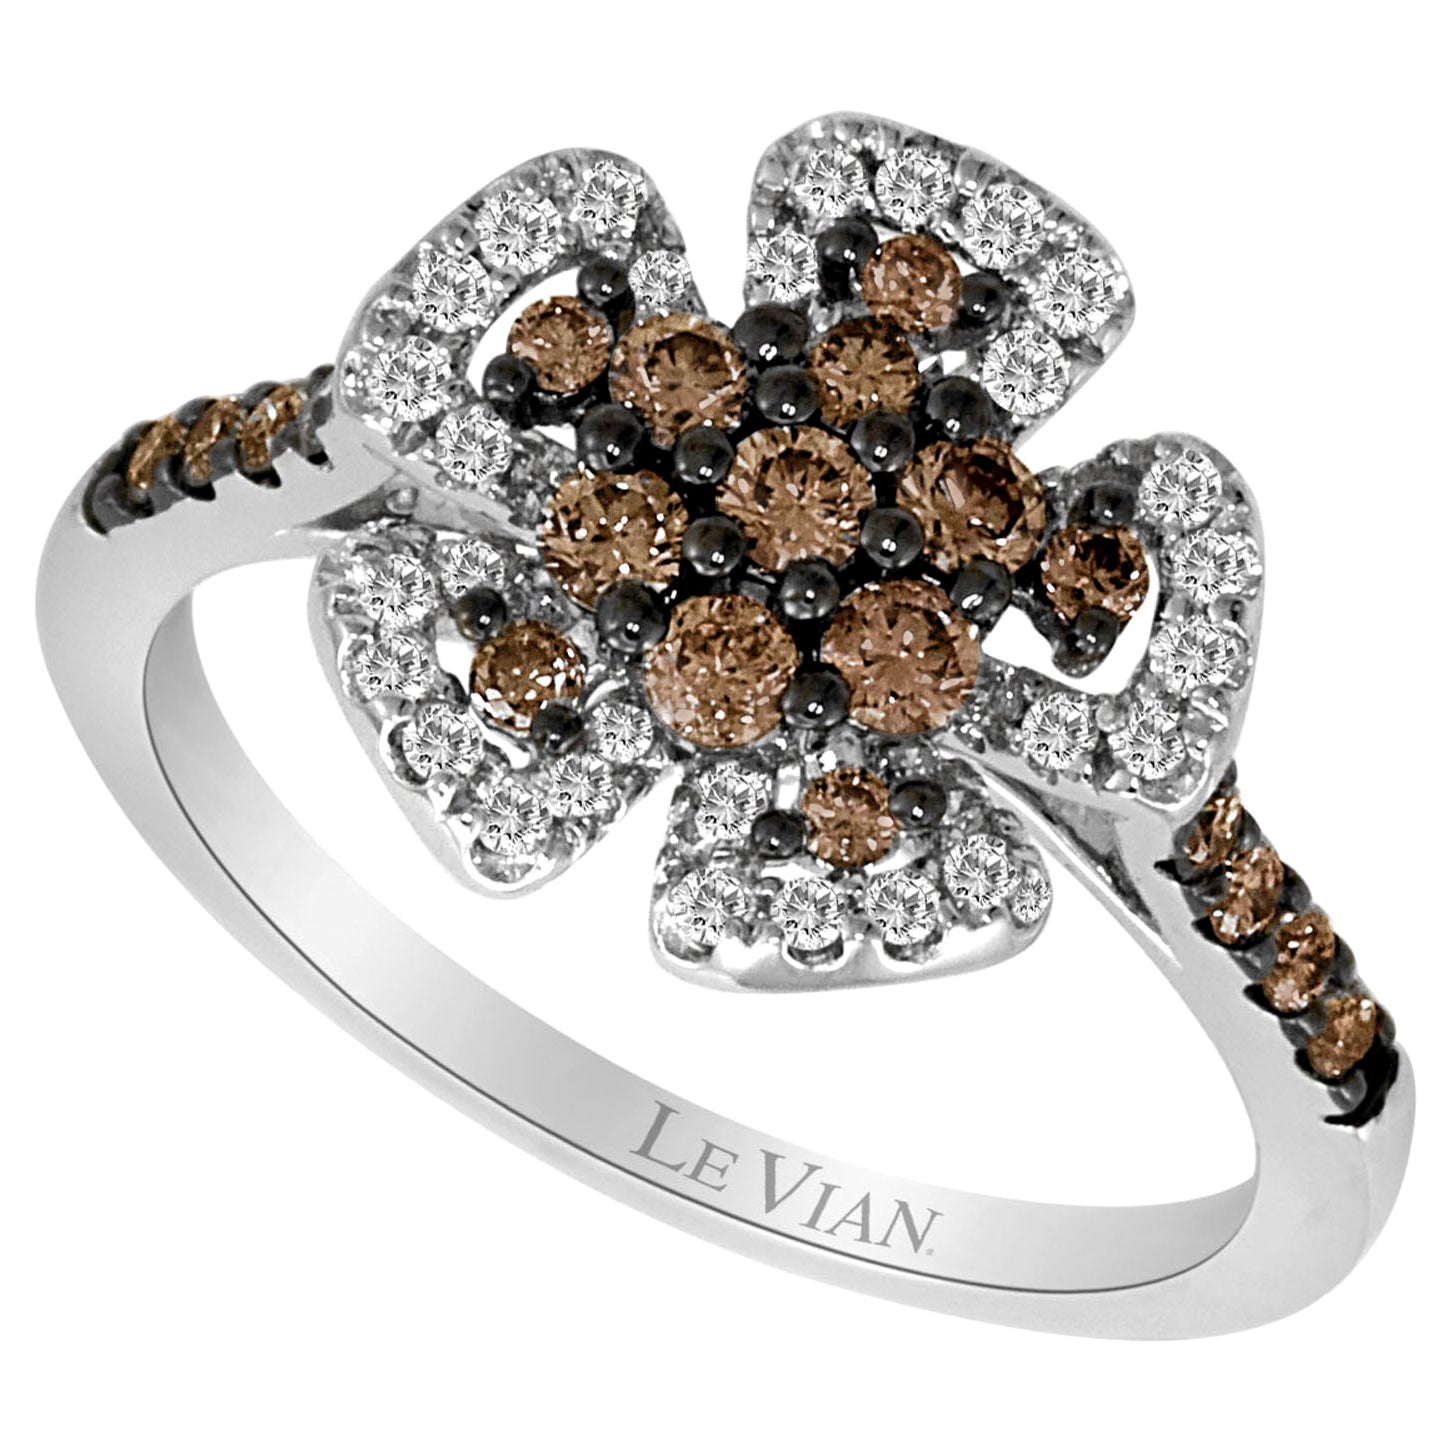 Belle et jolie bague fantaisie en or blanc 14 carats avec diamants ronds brun chocolat LeVian